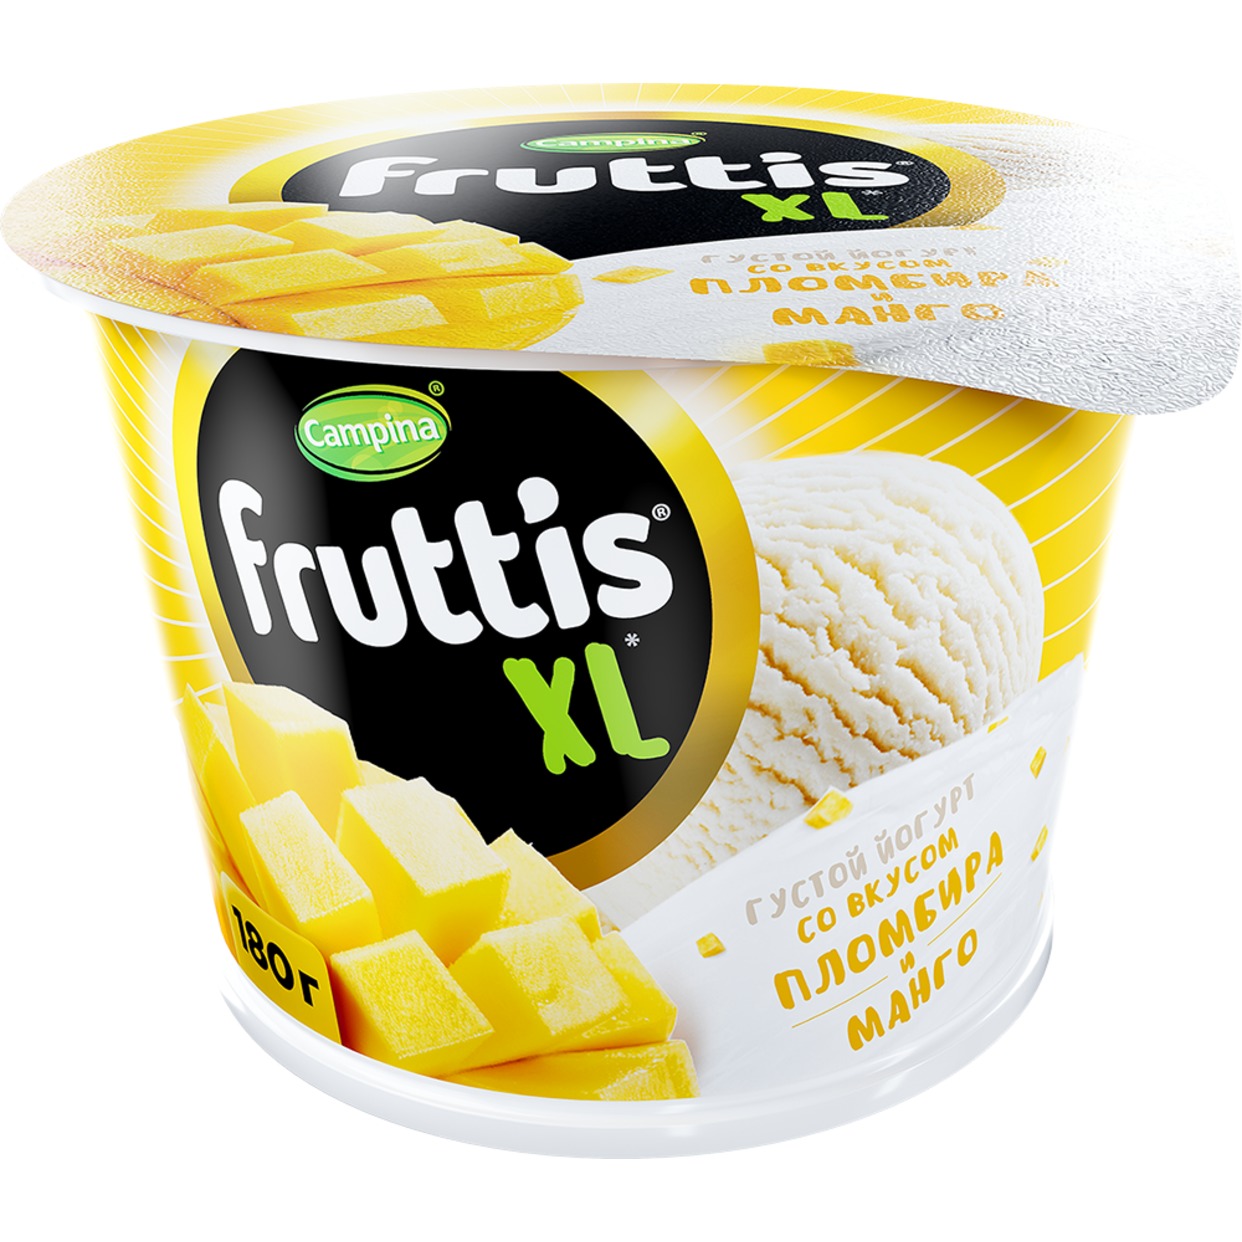 Йогурт Fruttis XL c манго и вкусом пломбира 4,3% 180г по акции в Пятерочке